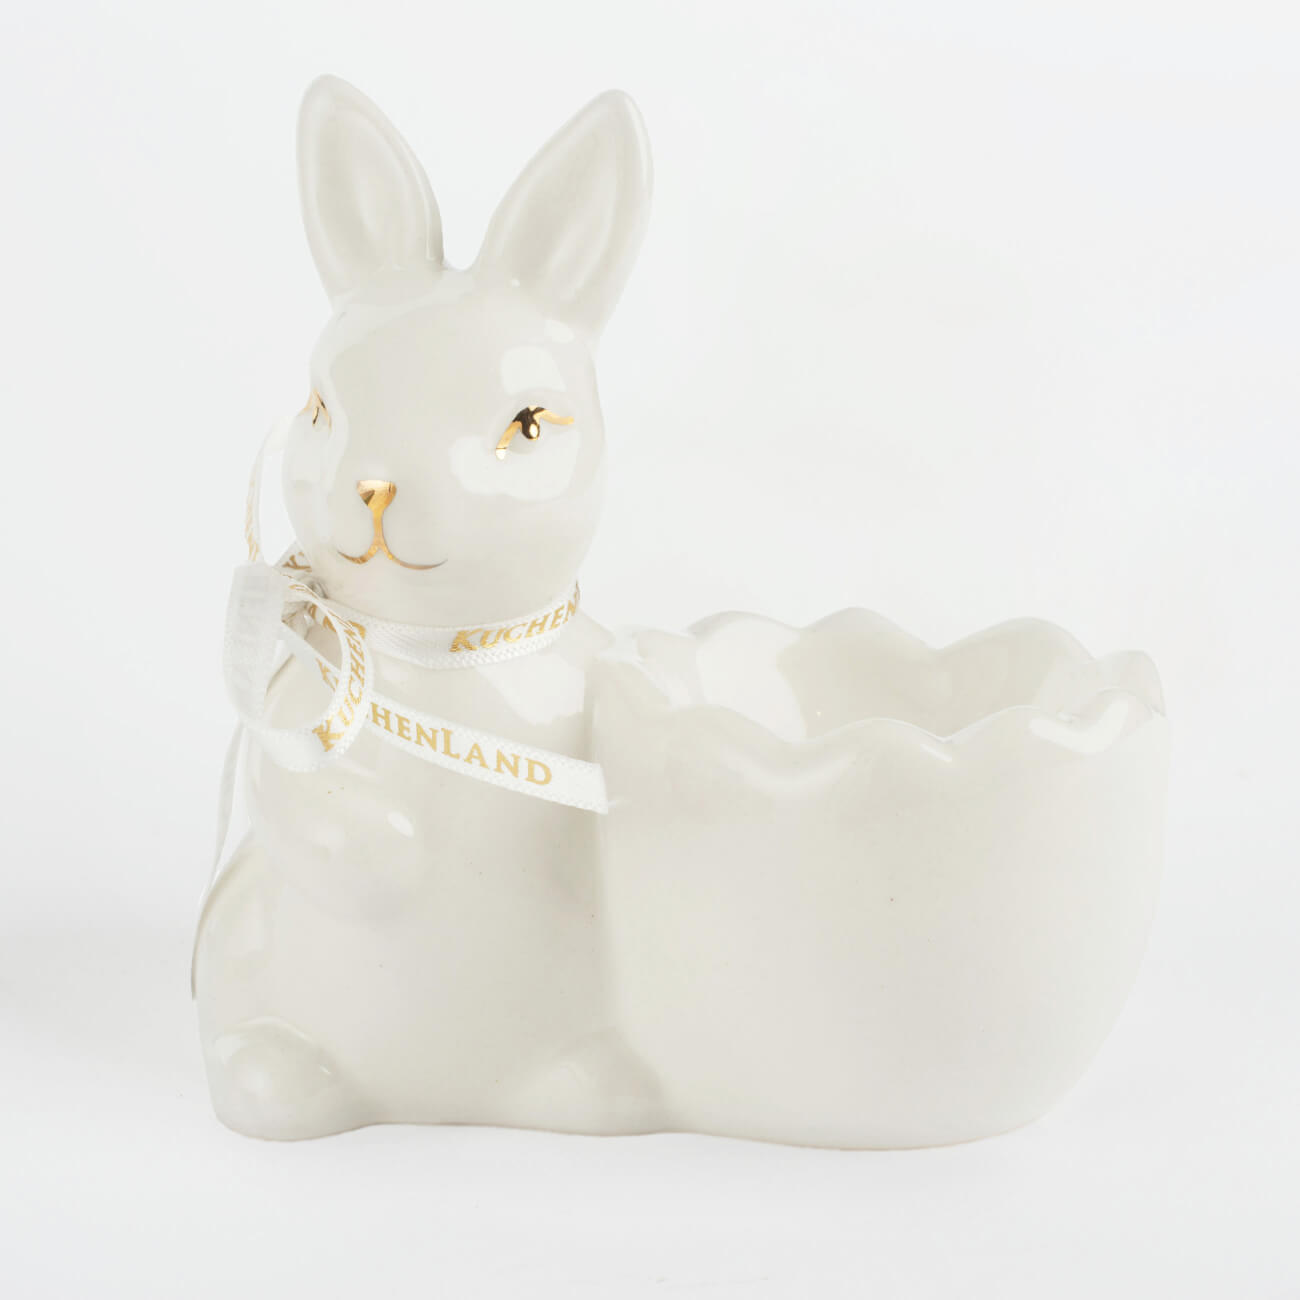 Подставка для яйца, 10 см, керамика, бело-золотистая, Кролик со скорлупкой, Easter gold изображение № 1